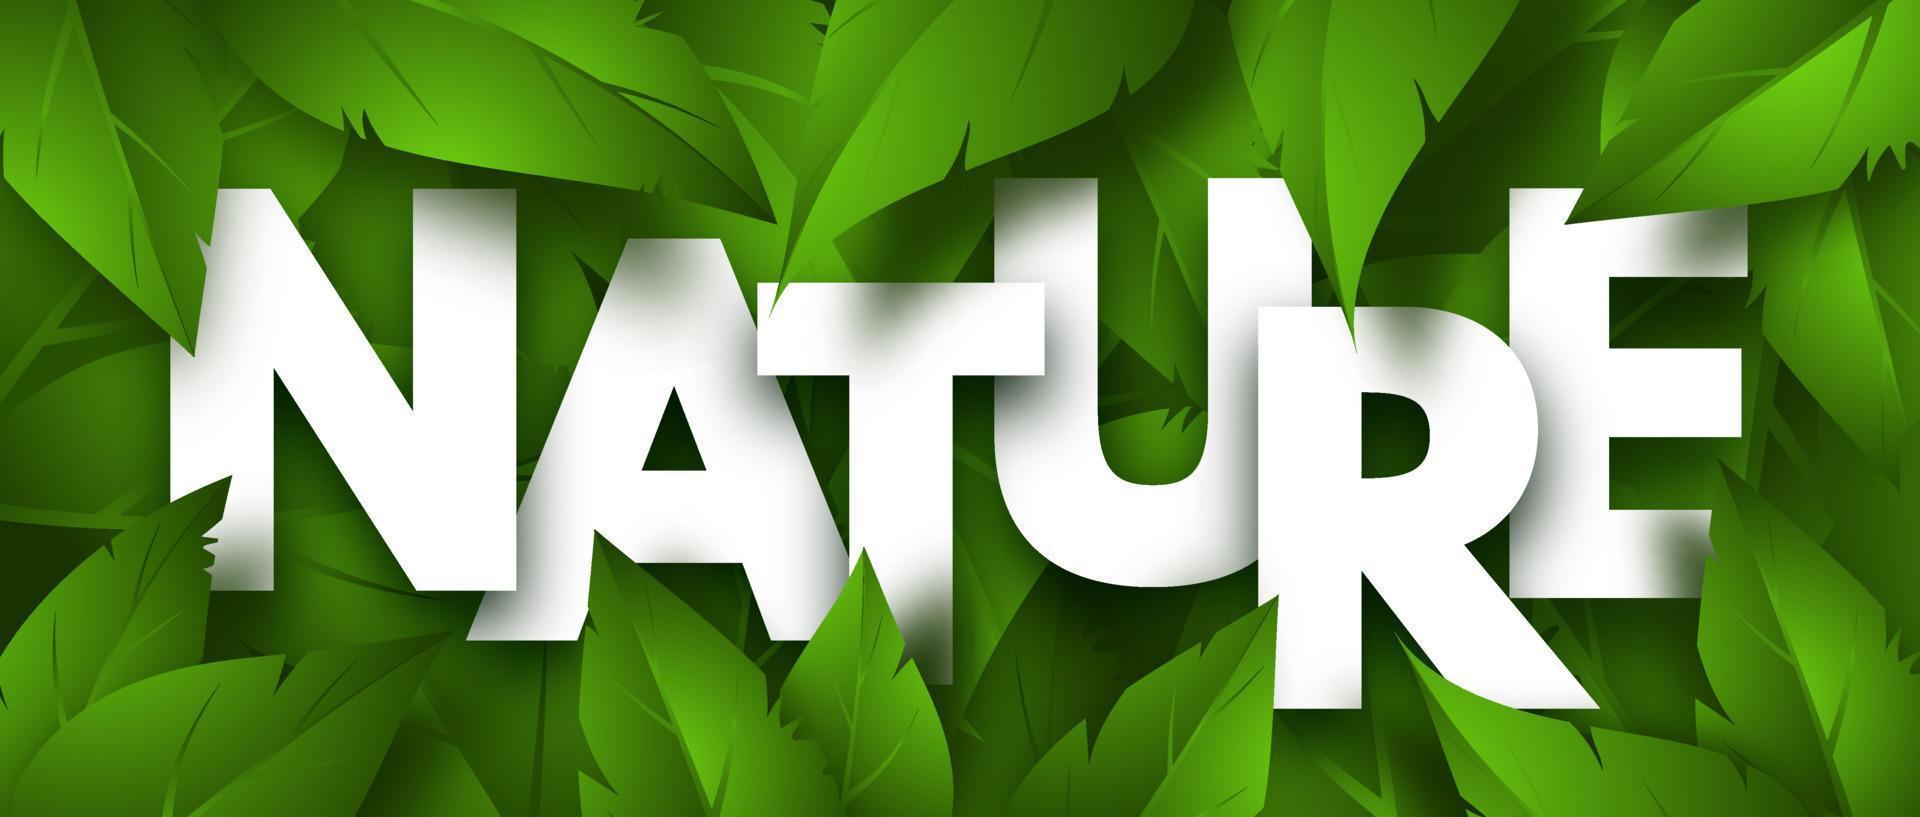 banner de conceito de natureza com folhagem verde exuberante. ilustração vetorial vetor